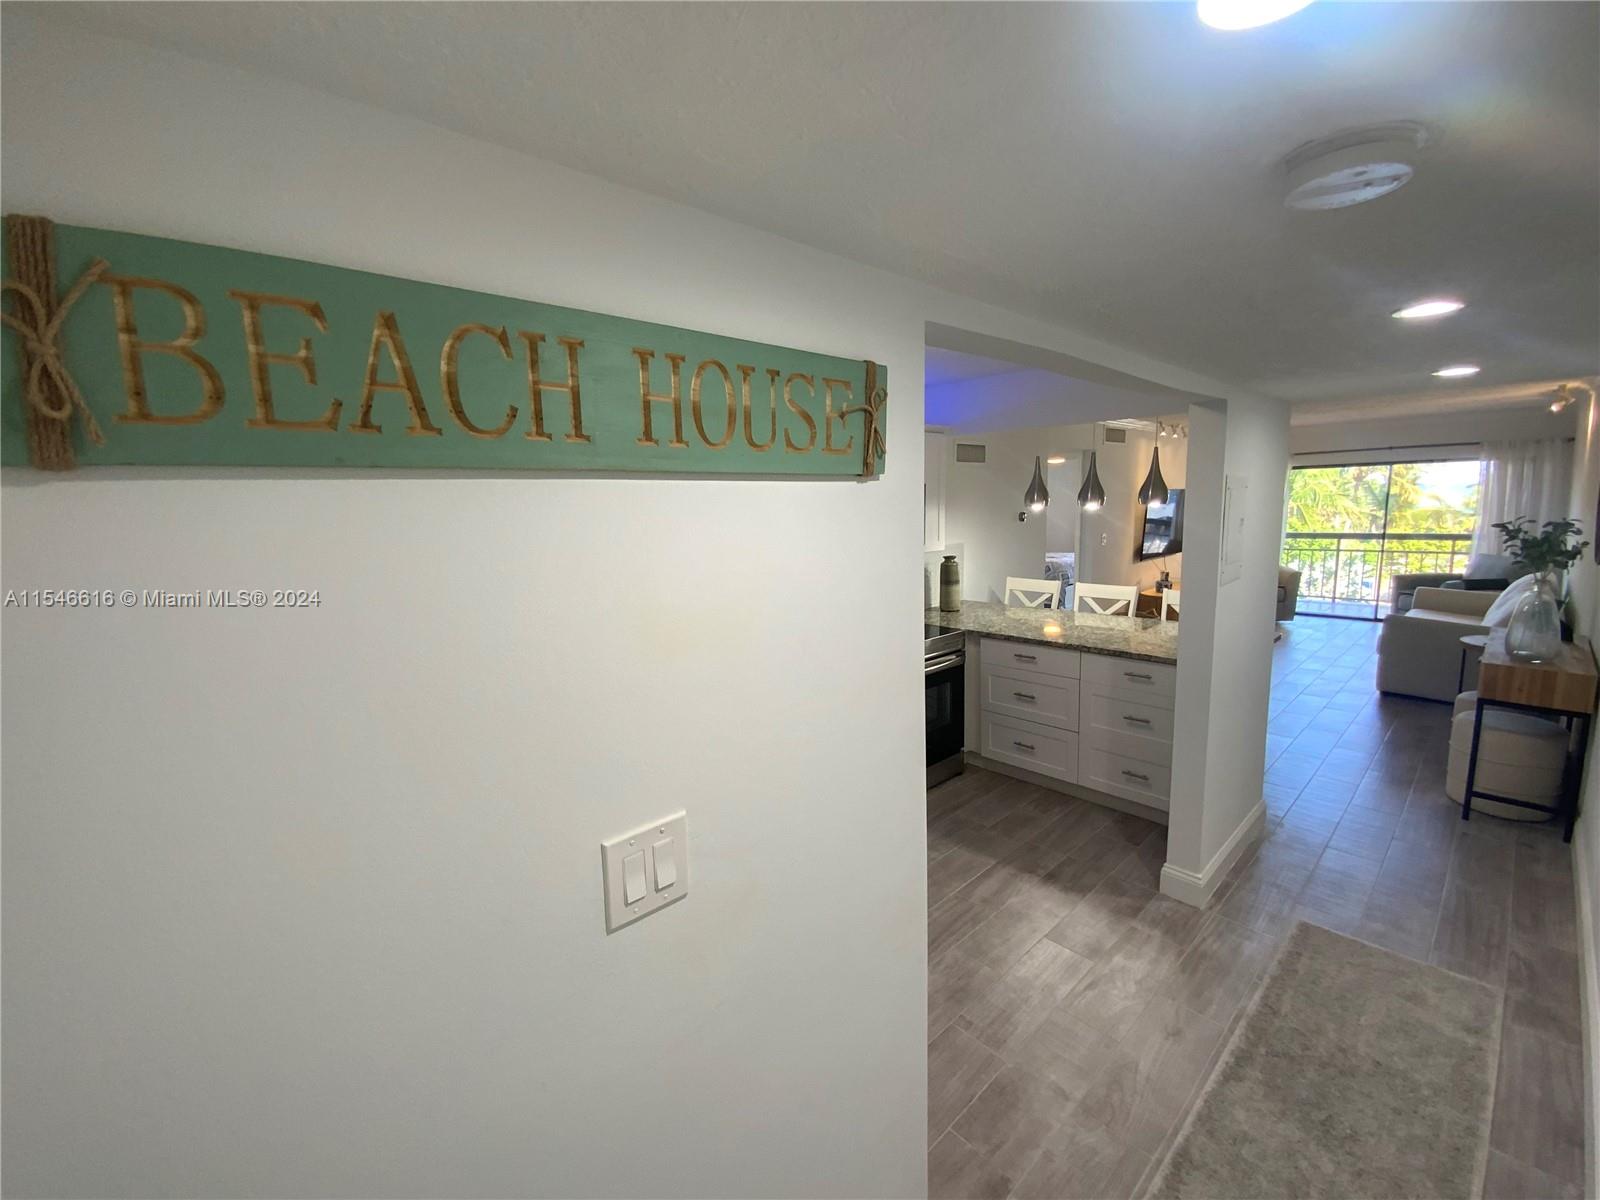 Rental Property at 6444 Collins Ave A6, Miami Beach, Miami-Dade County, Florida - Bedrooms: 2 
Bathrooms: 2  - $3,200 MO.